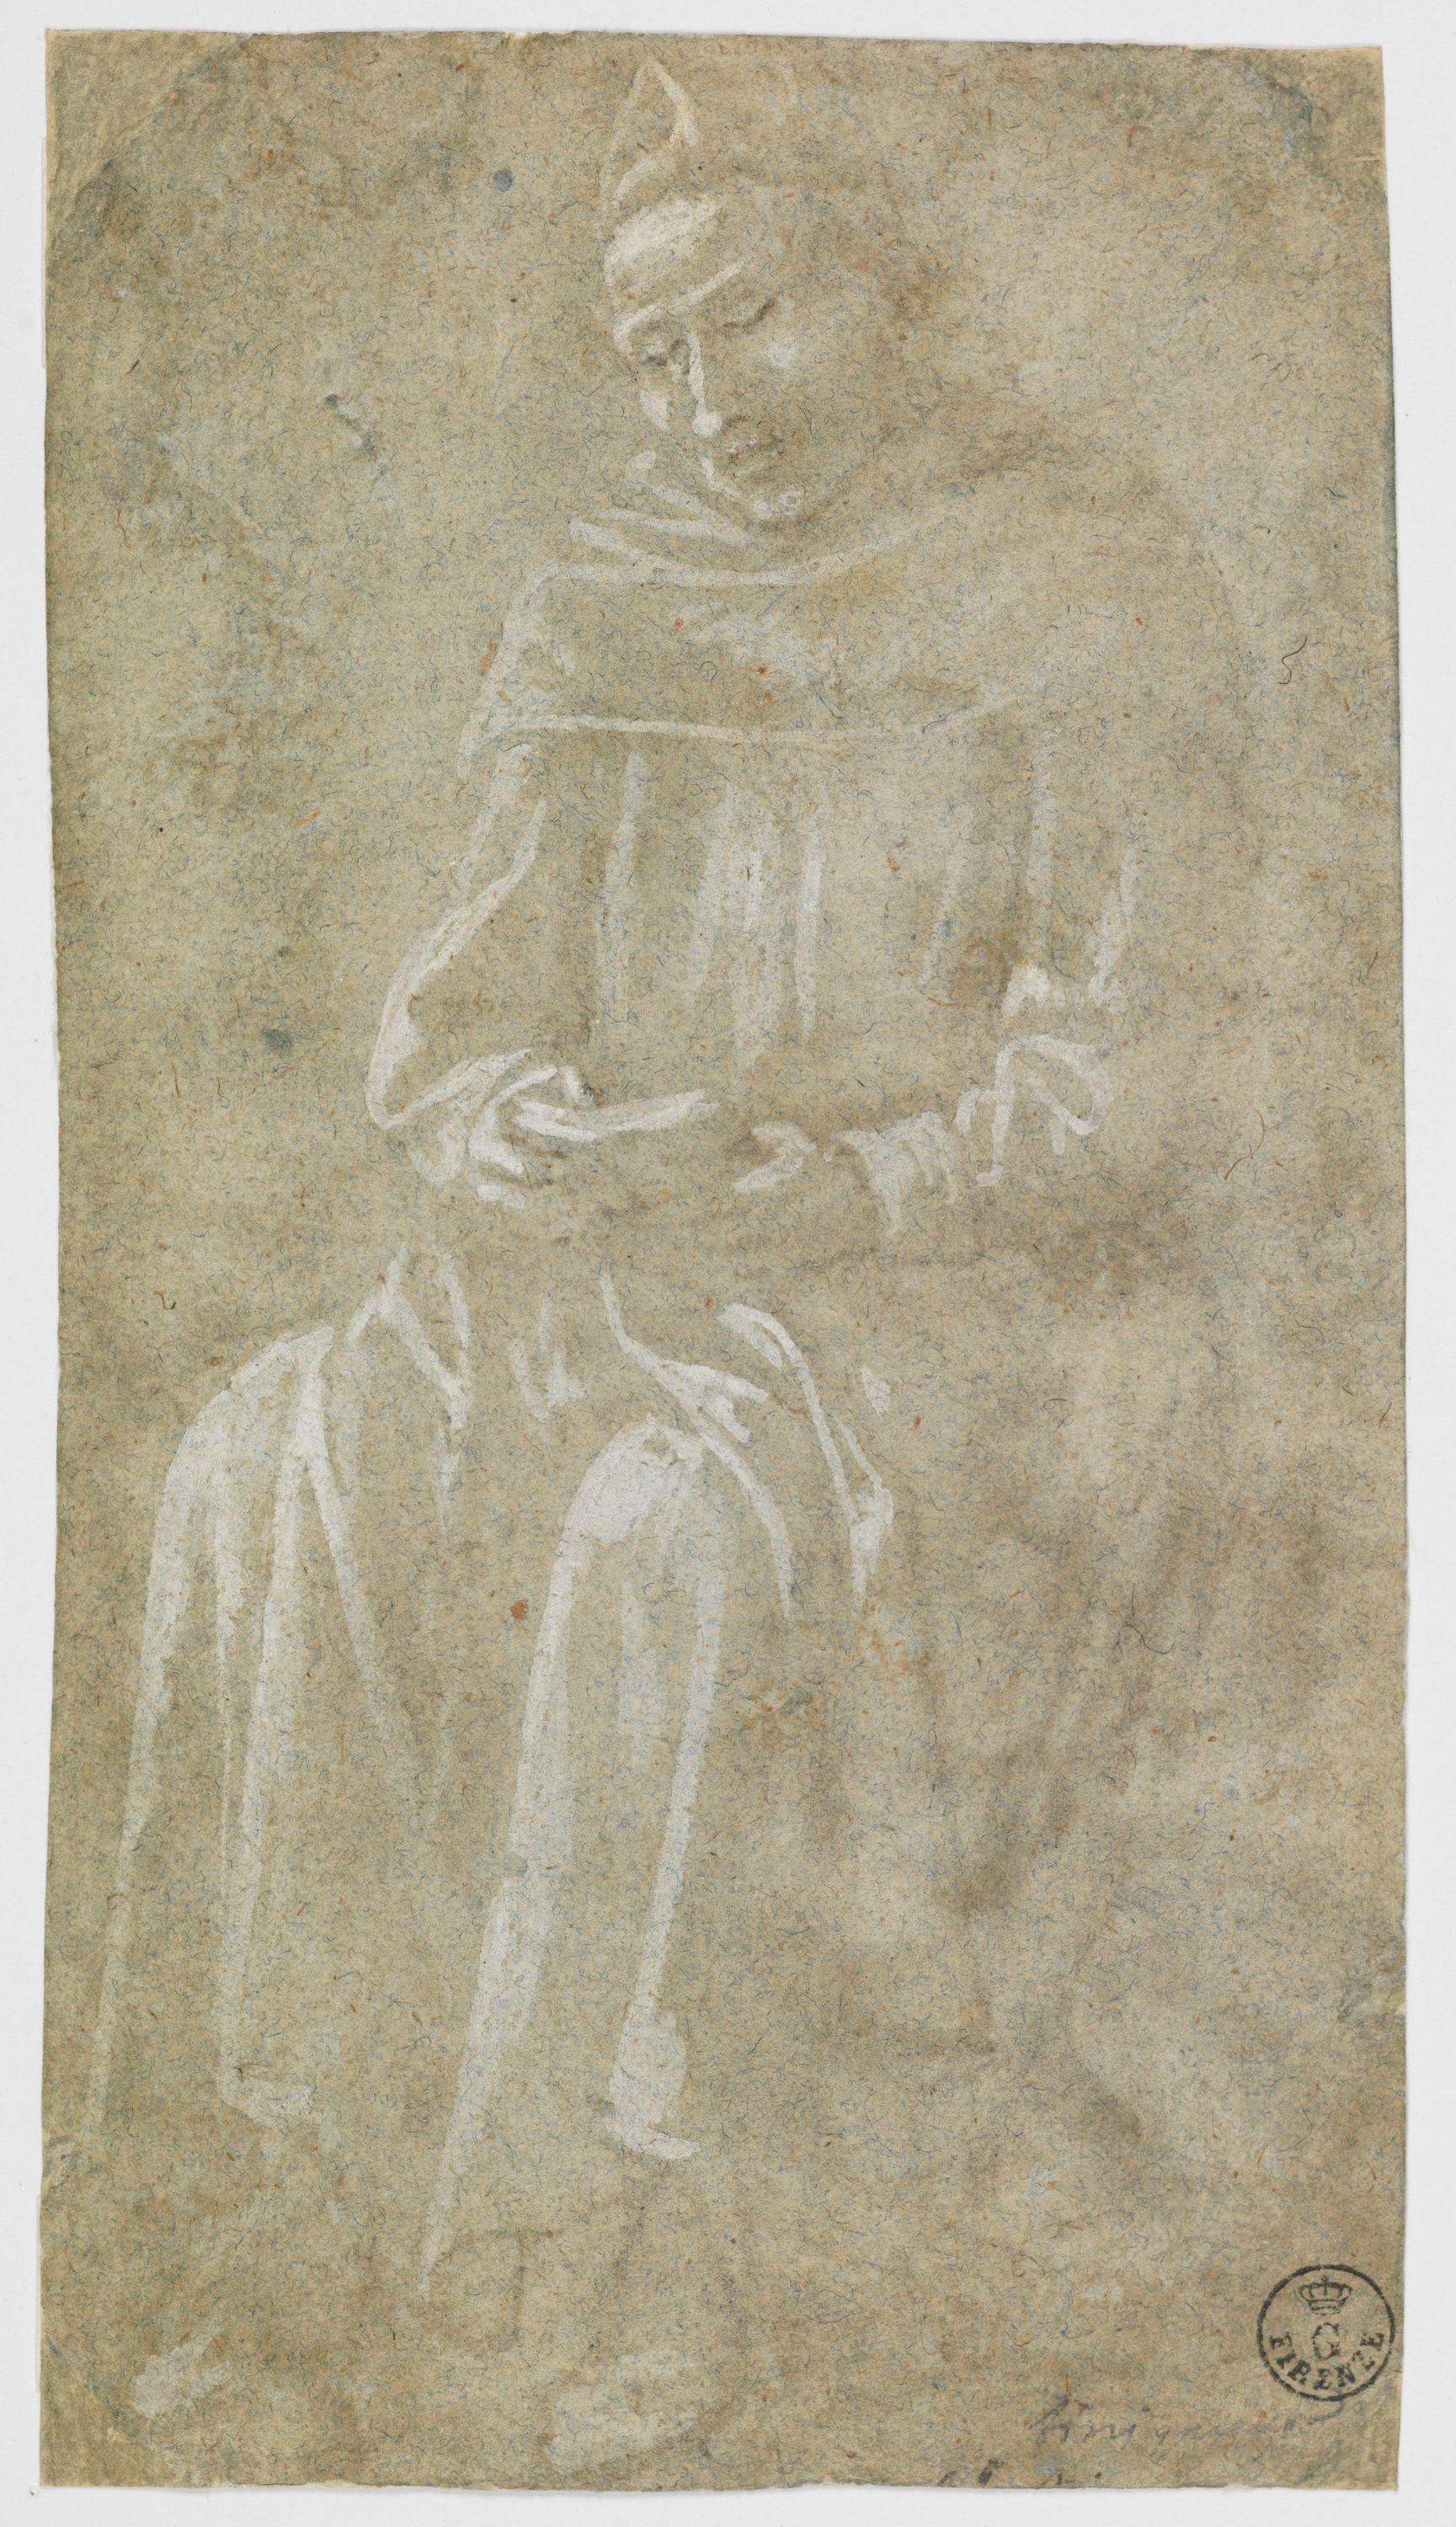 Frate seduto con libro tra le mani (disegno) - ambito fiorentino (terzo quarto XV)